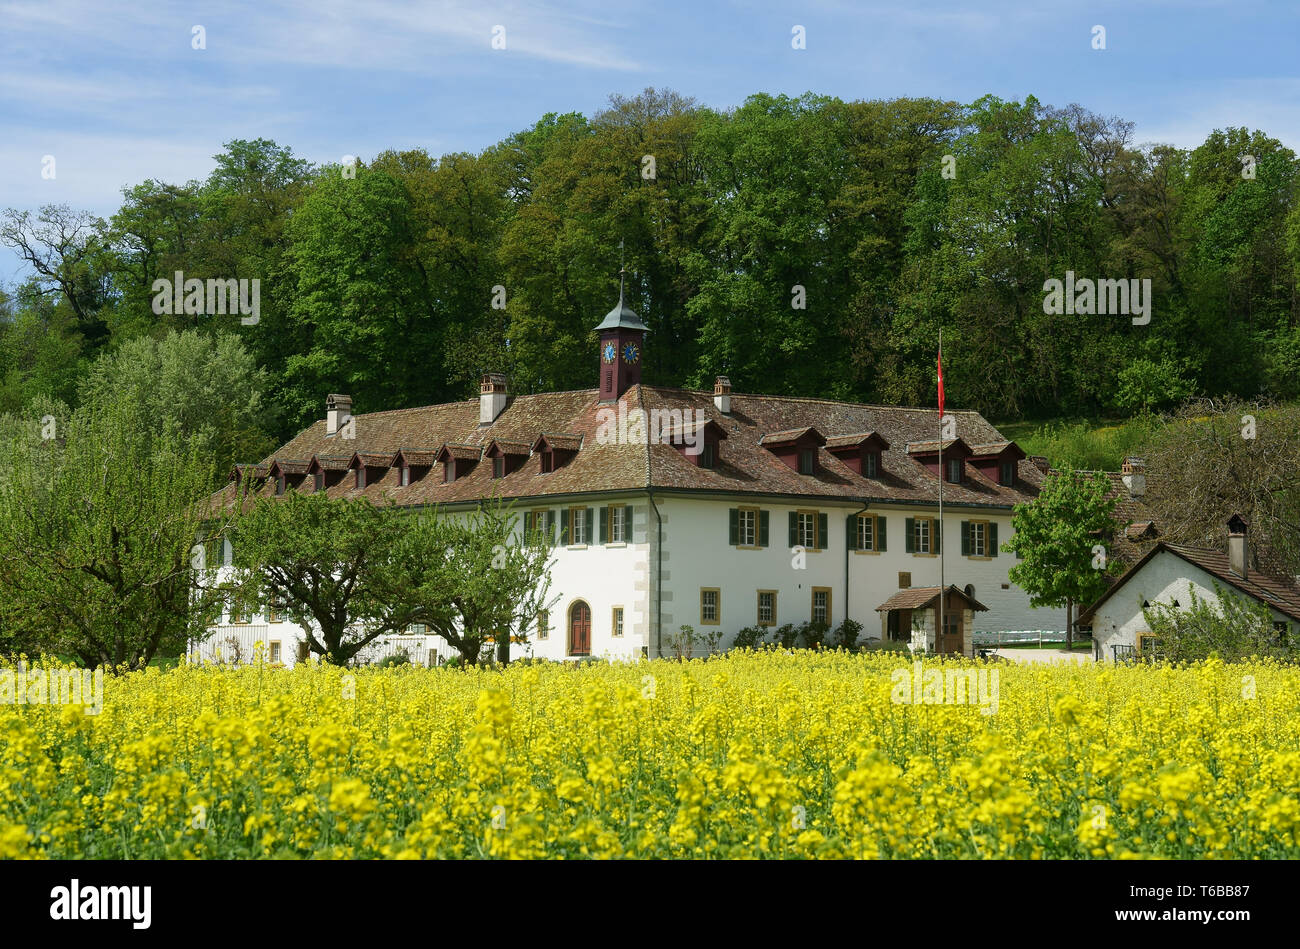 Ehemaliges Kloster und jetzt das Hotel und Restaurant St. Peter Insel im See oder Biel Bienne im Frühling mit blühenden Raps Feld, Schweiz Stockfoto